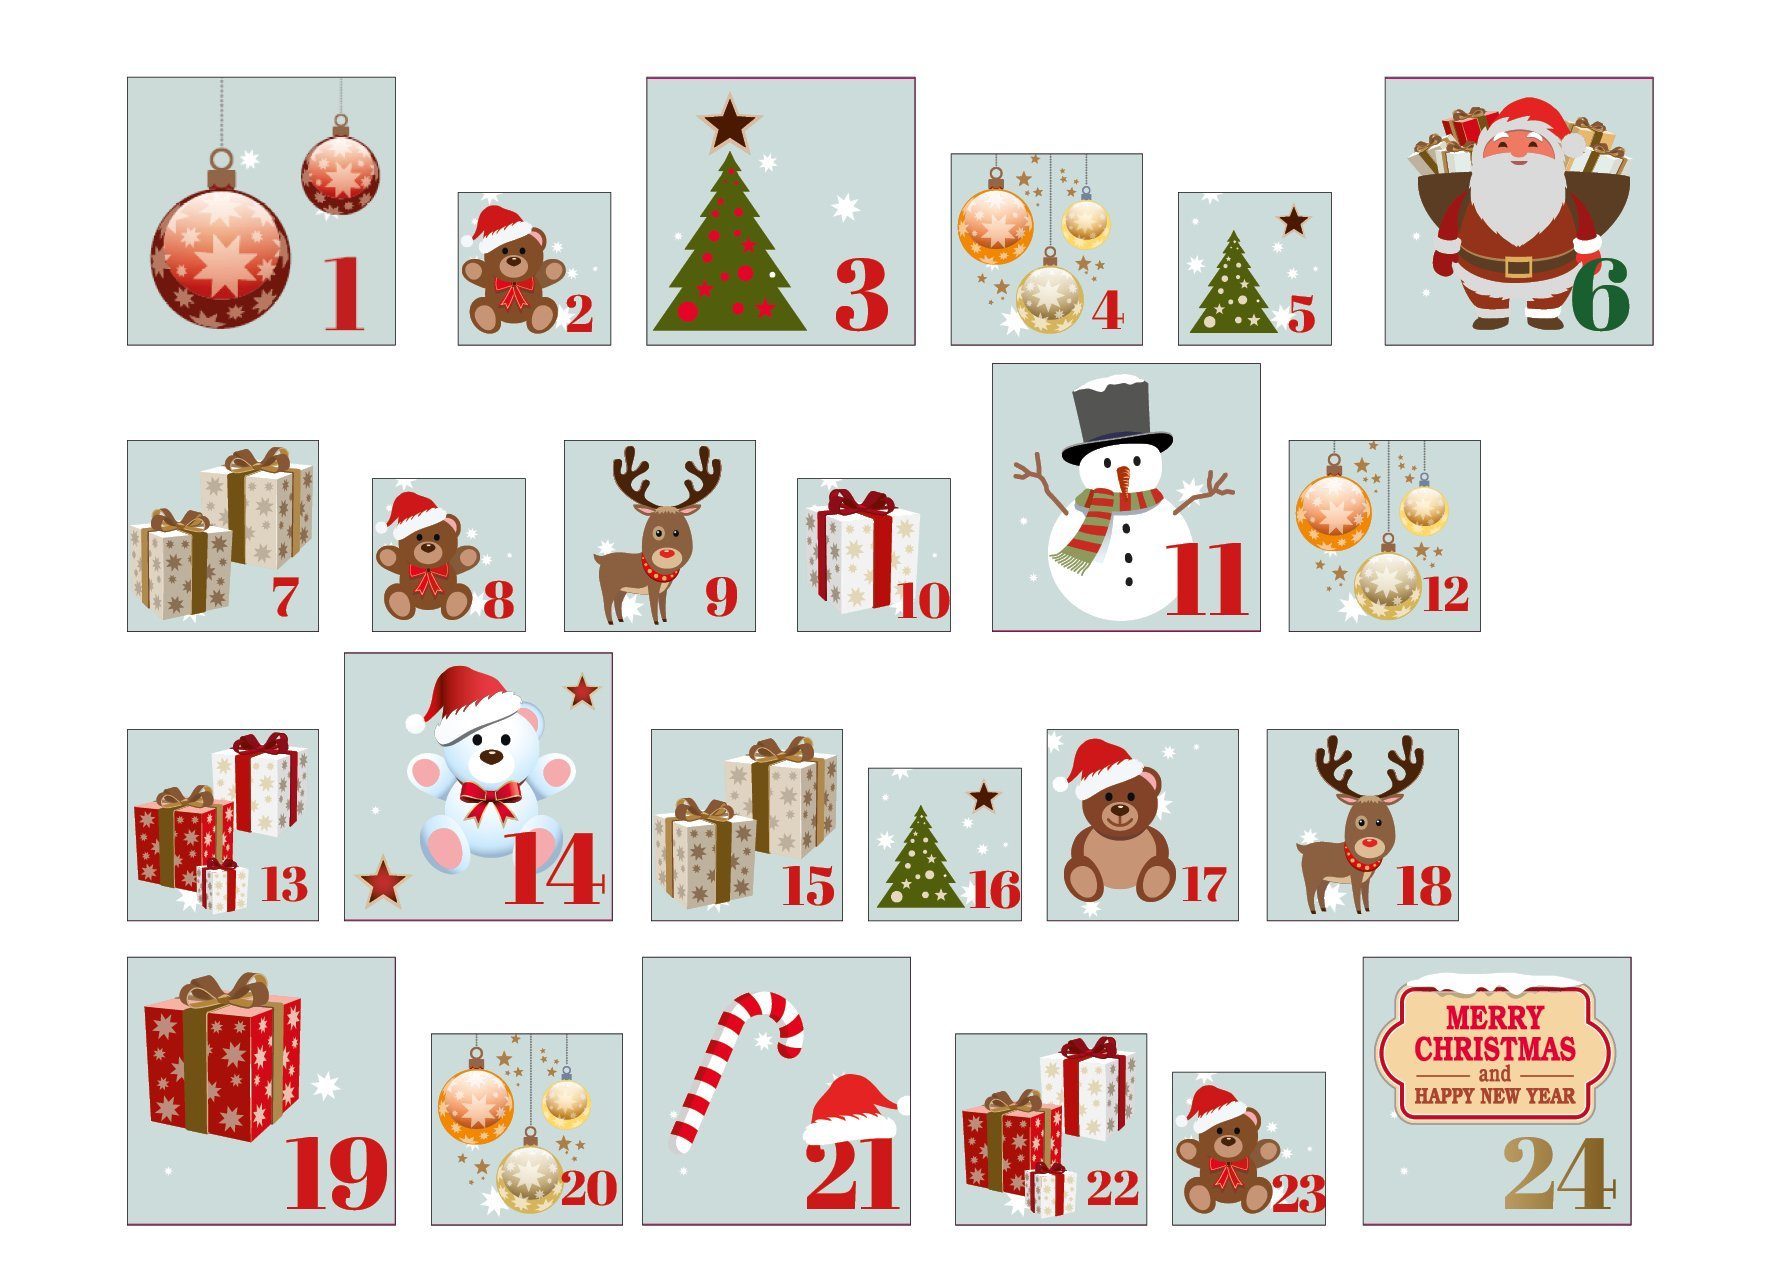 24 - Adventskalender zum Weihnachtsboxen befüllbarer Adventskalender, zum Befüllen Spetebo befüllen